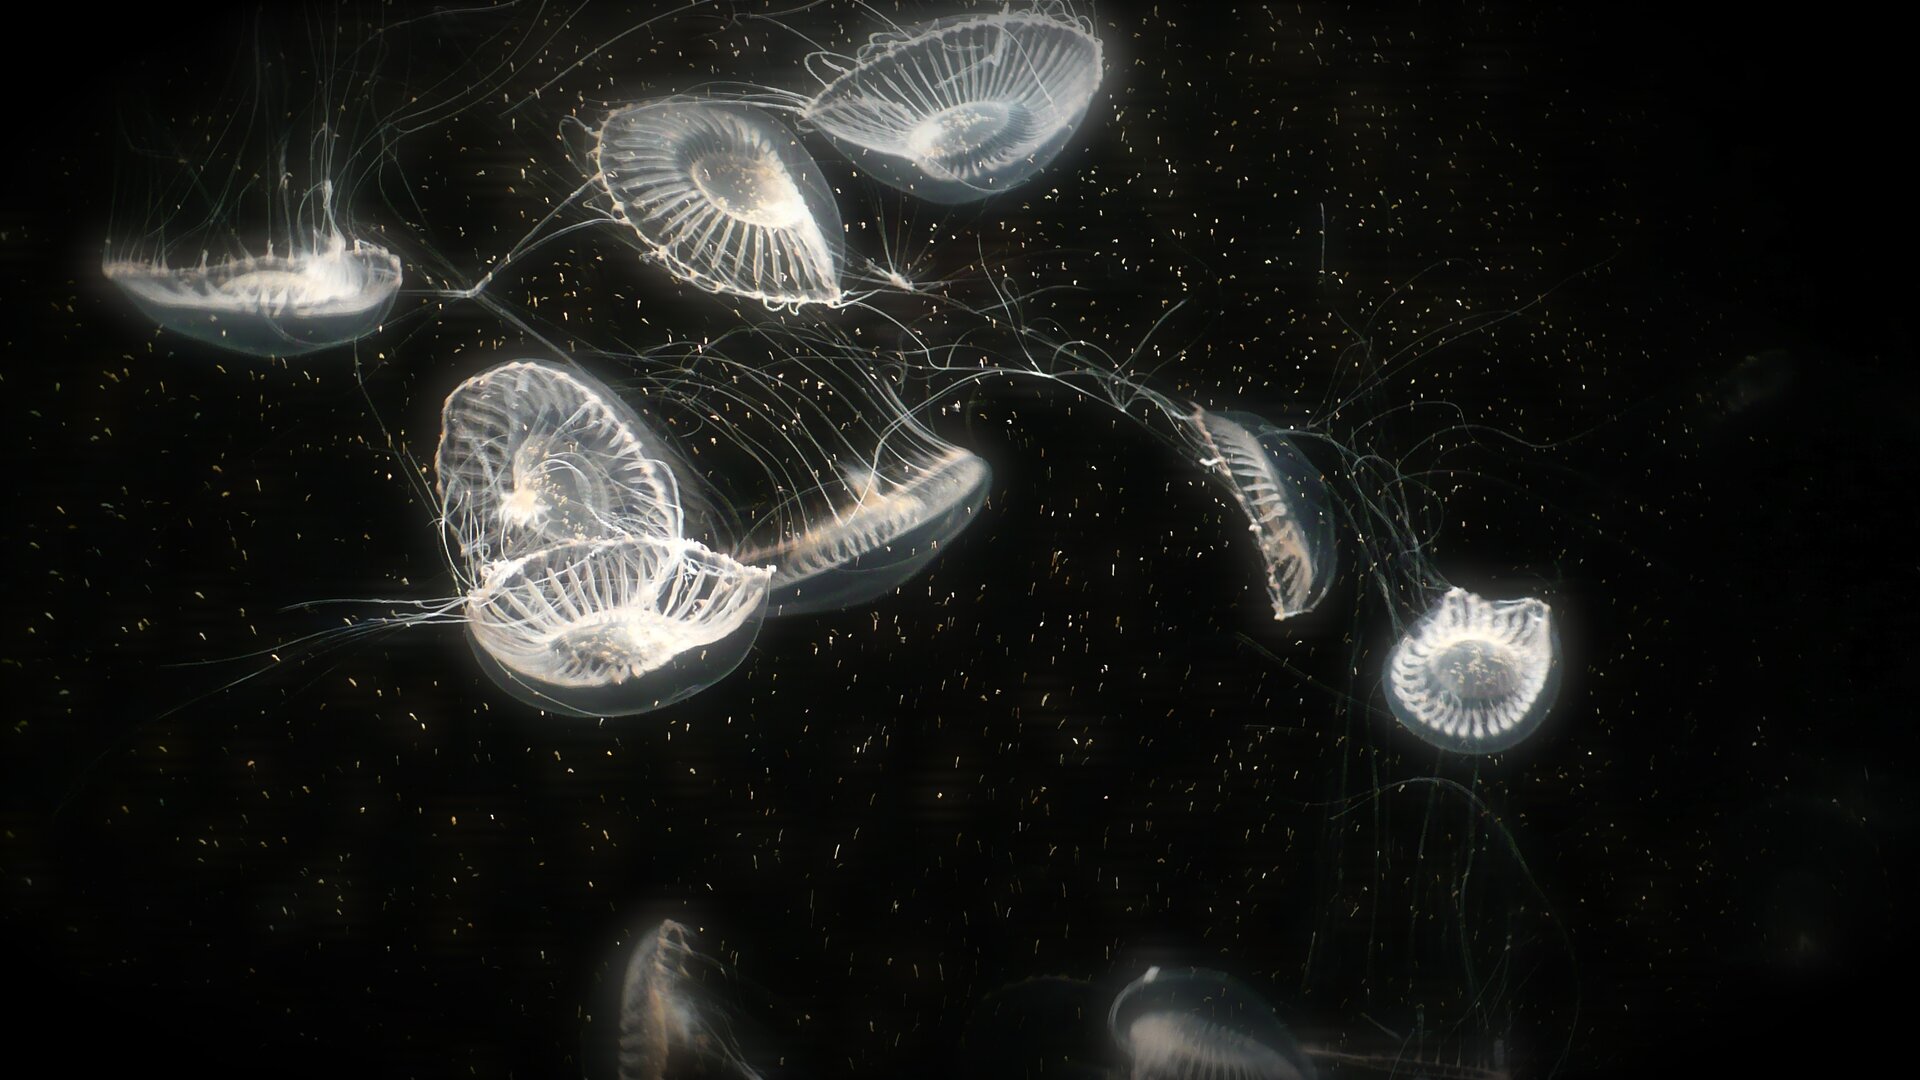 Fotografia przedstawia dziesięć meduz w ciemnej morskiej toni. Meduzy są przezroczyste i mają liczne długie czułki. Znajdują się w różnym położeniu, widocznym dzięki temu, że część ich ciała świeci. Znajduje się tam białko GFP, które pozyskuje się z meduz.